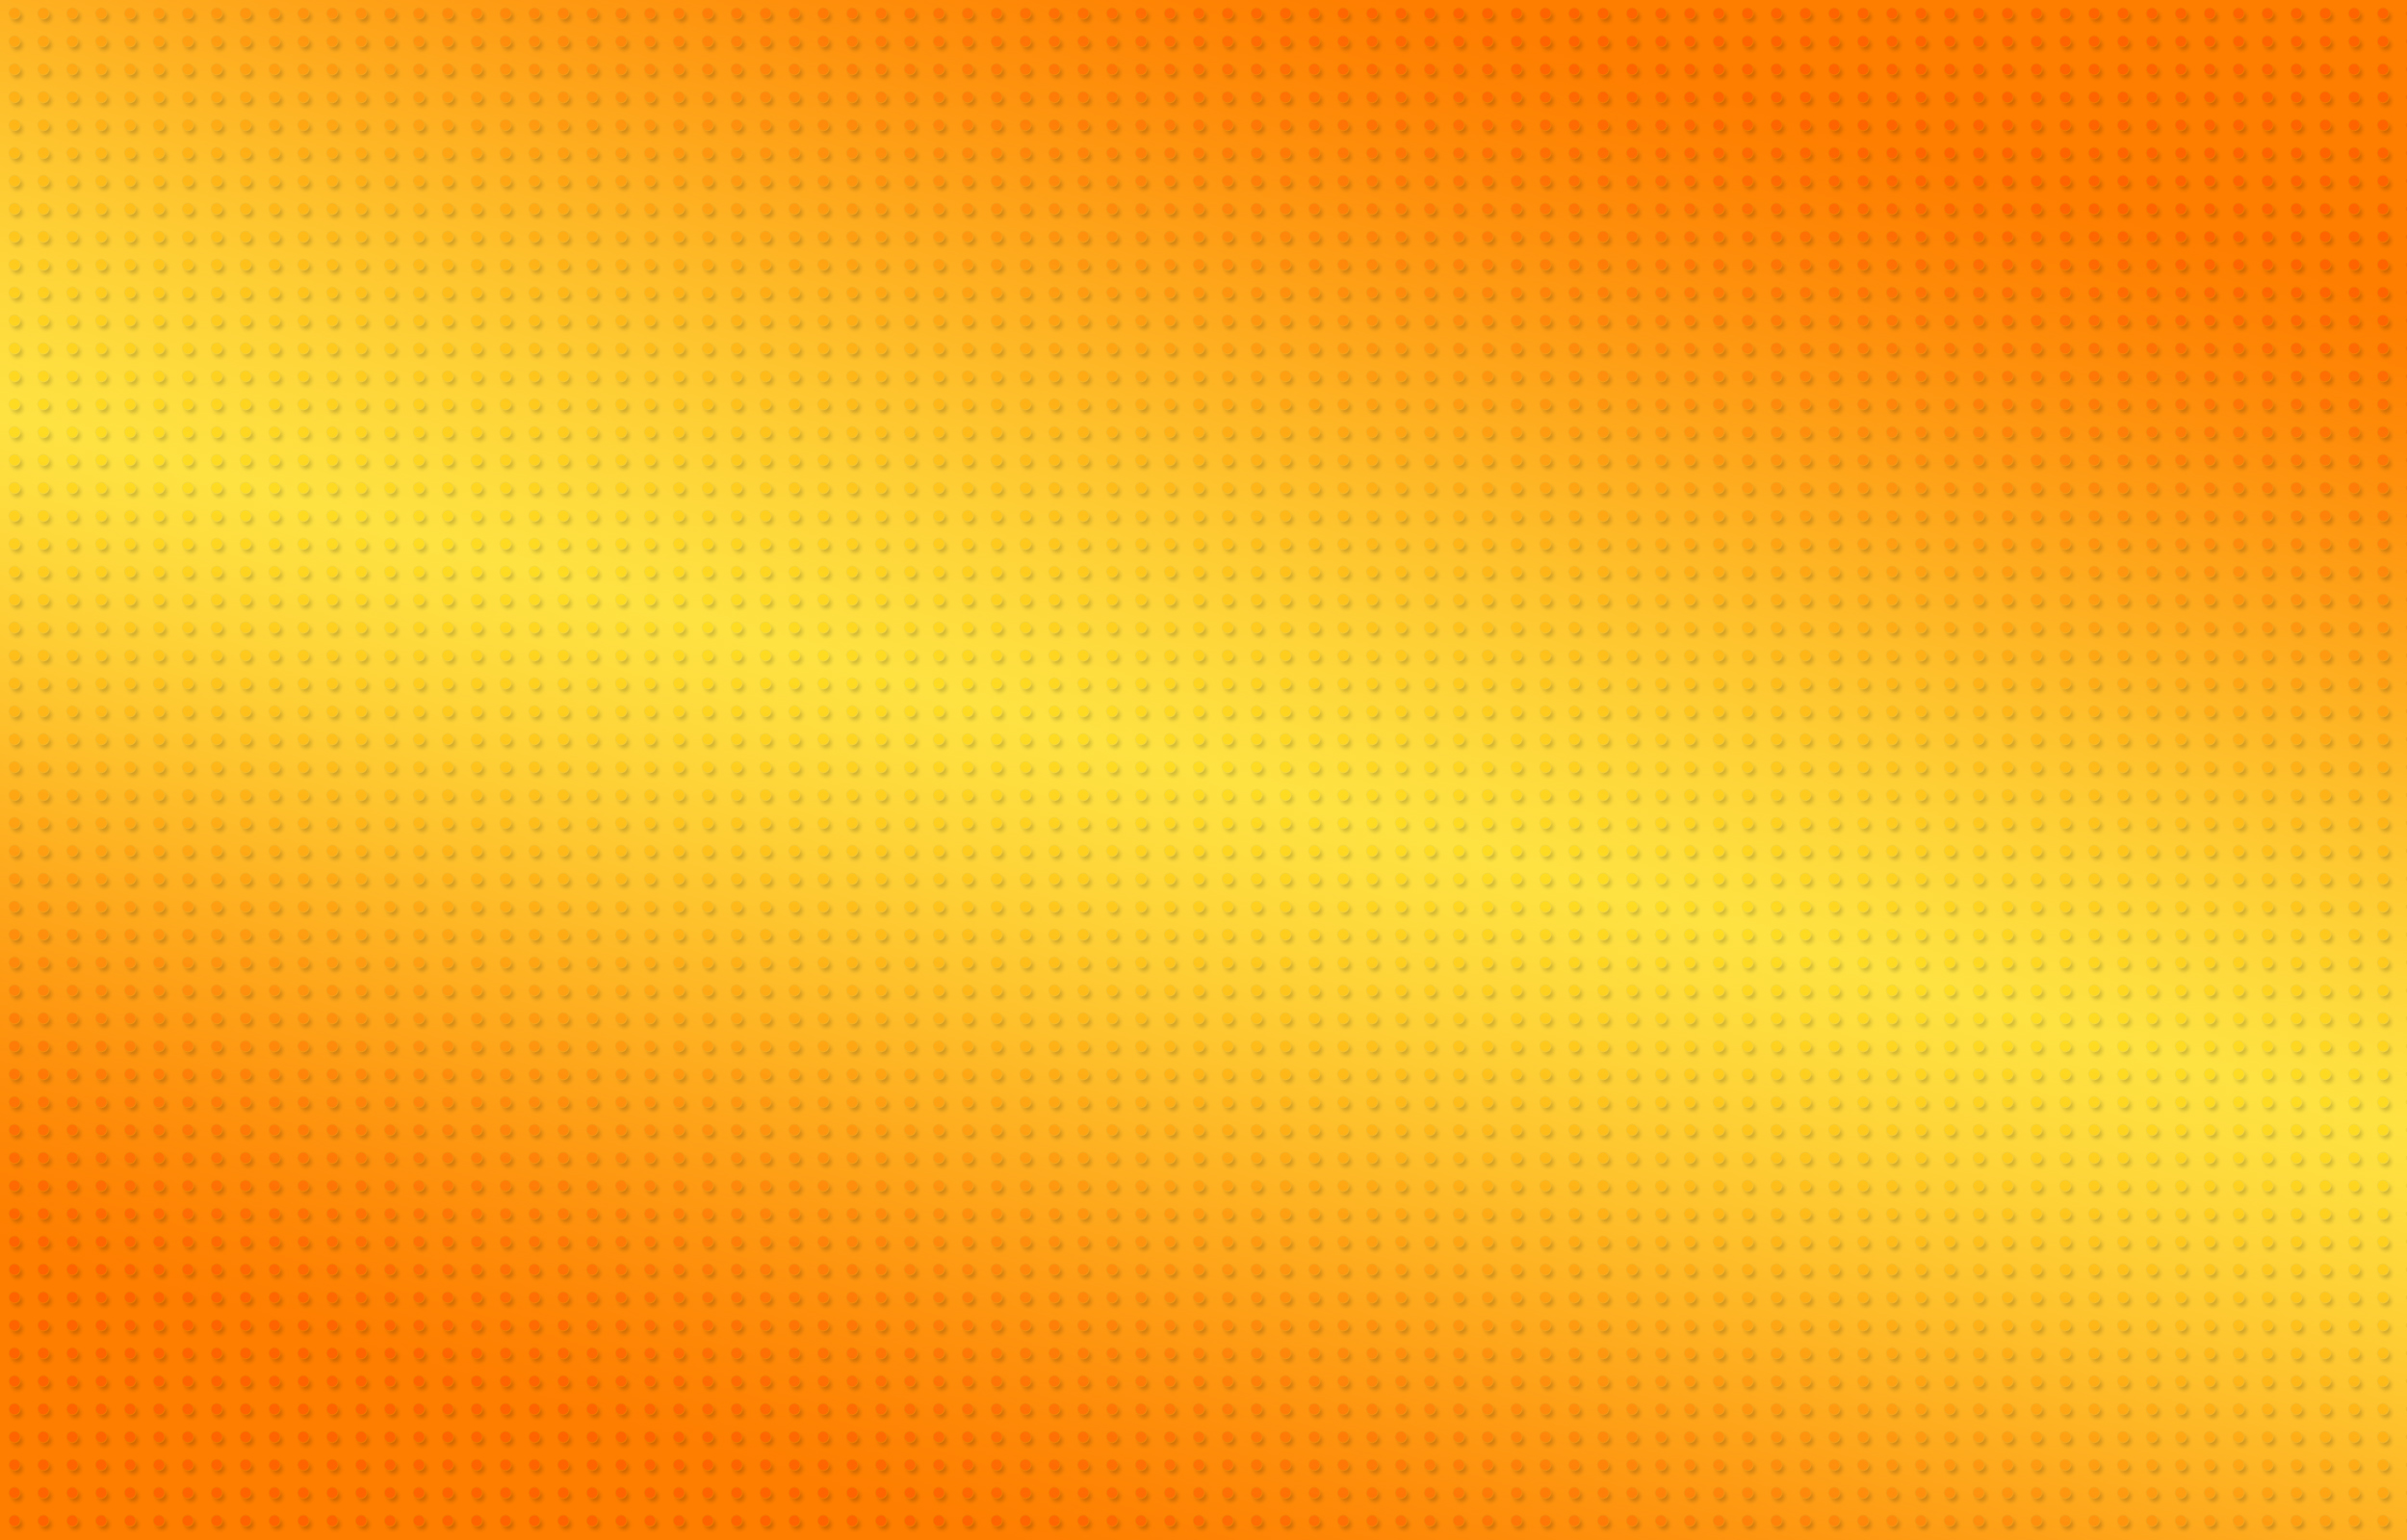 Hãy khám phá bức tranh đặc sắc với màu cam của NickoLass để cảm nhận được sự mới lạ và độc đáo trong từng chi tiết được vẽ nét trong sắc màu tươi sáng và thu hút.